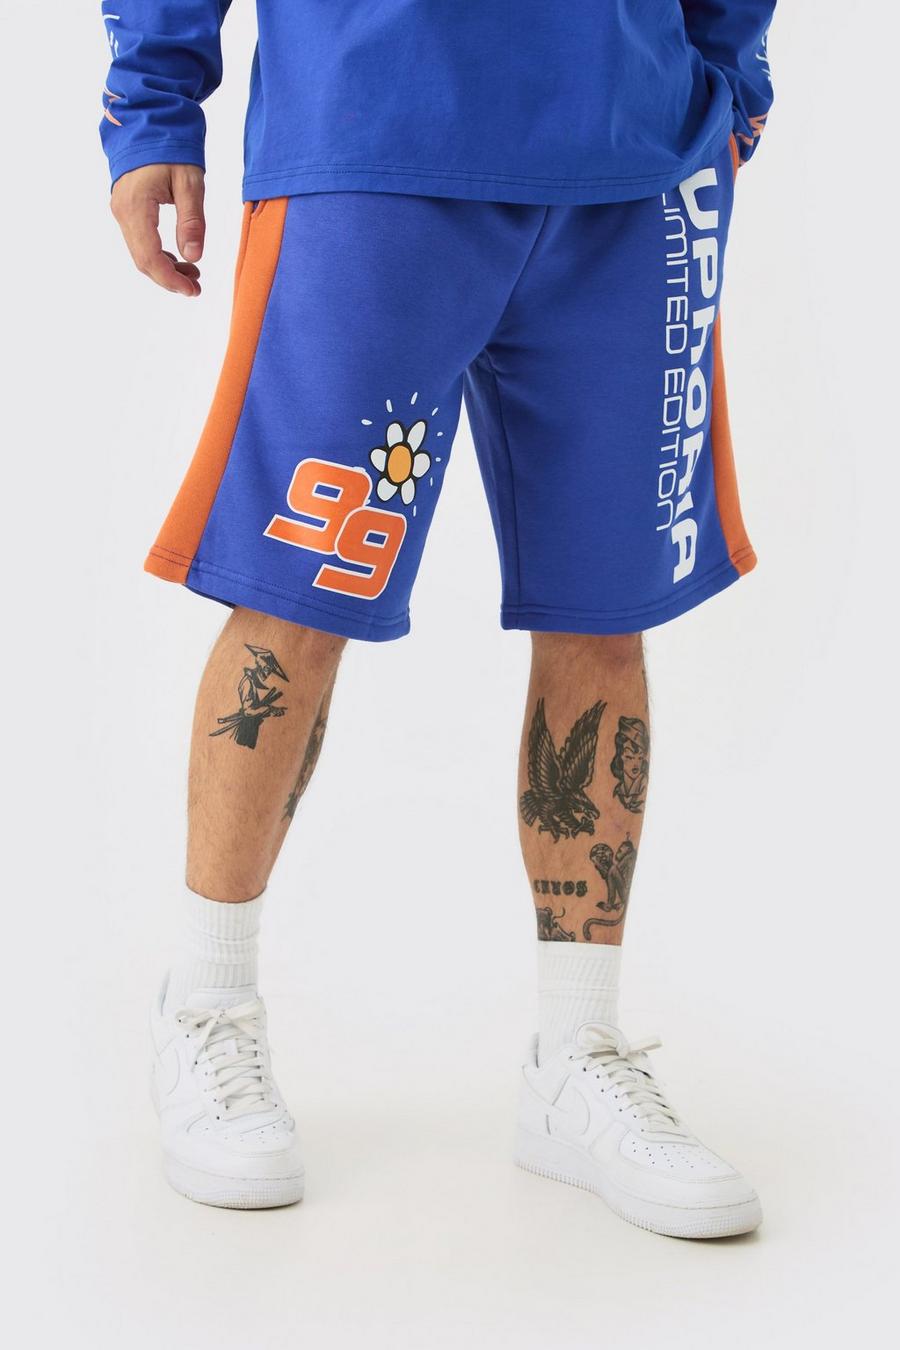 Pantalón corto largo de baloncesto con estampado gráfico Euphoria, Cobalt